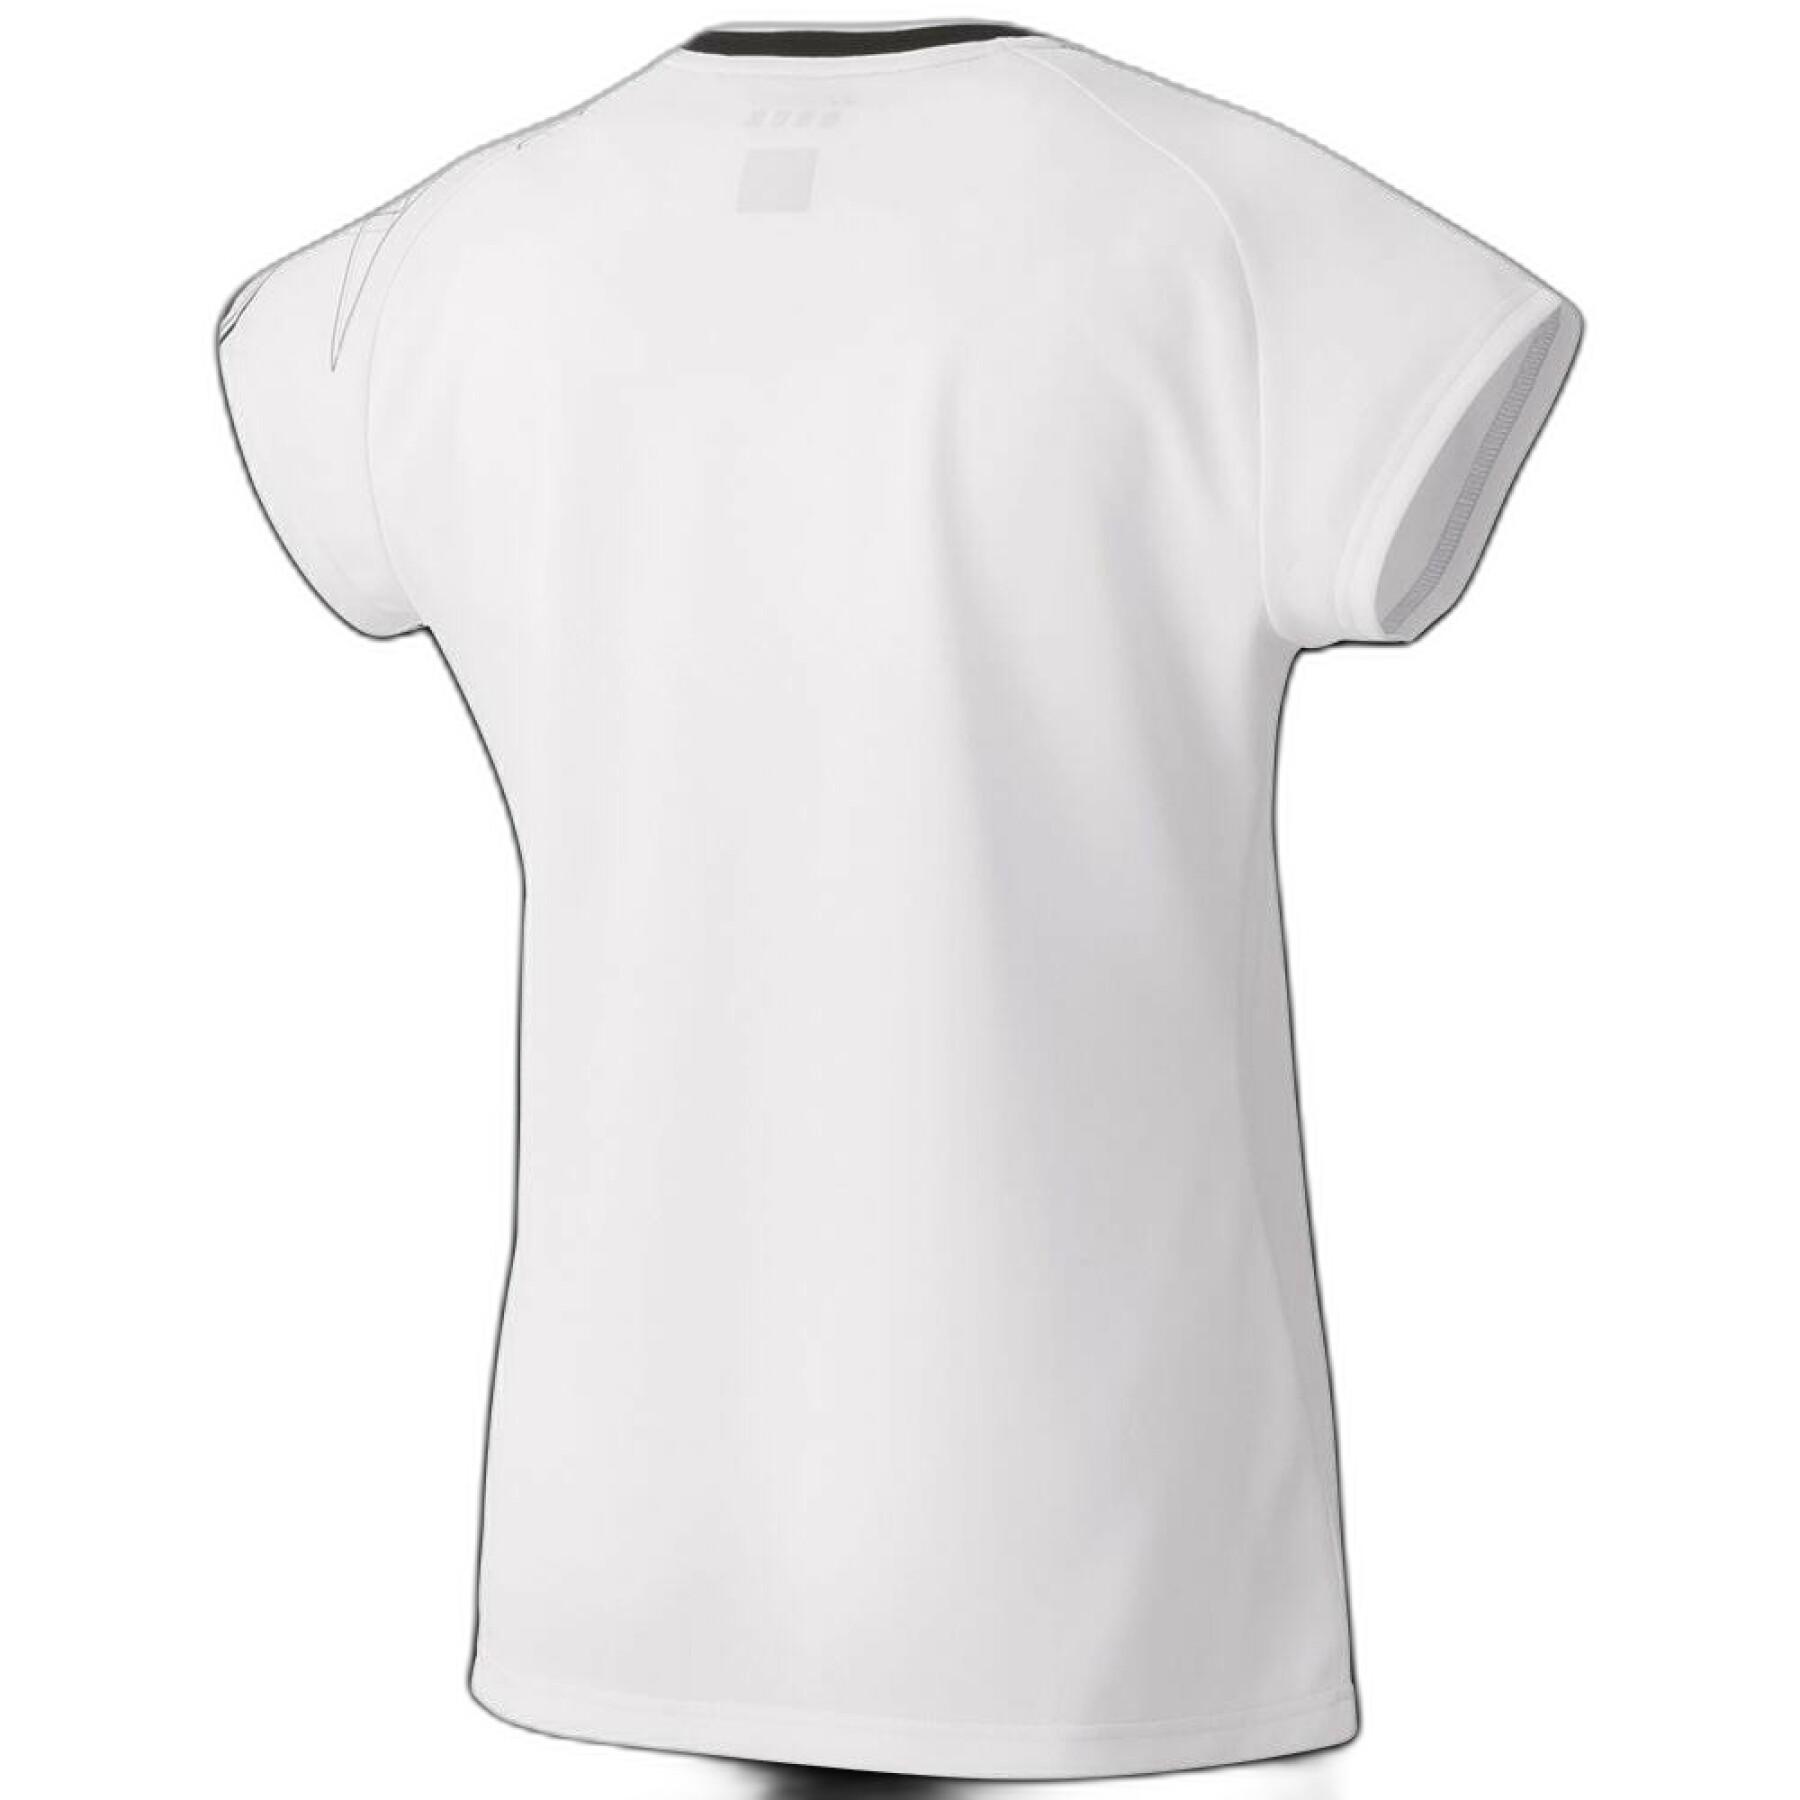 Women's T-shirt Yonex 20522e